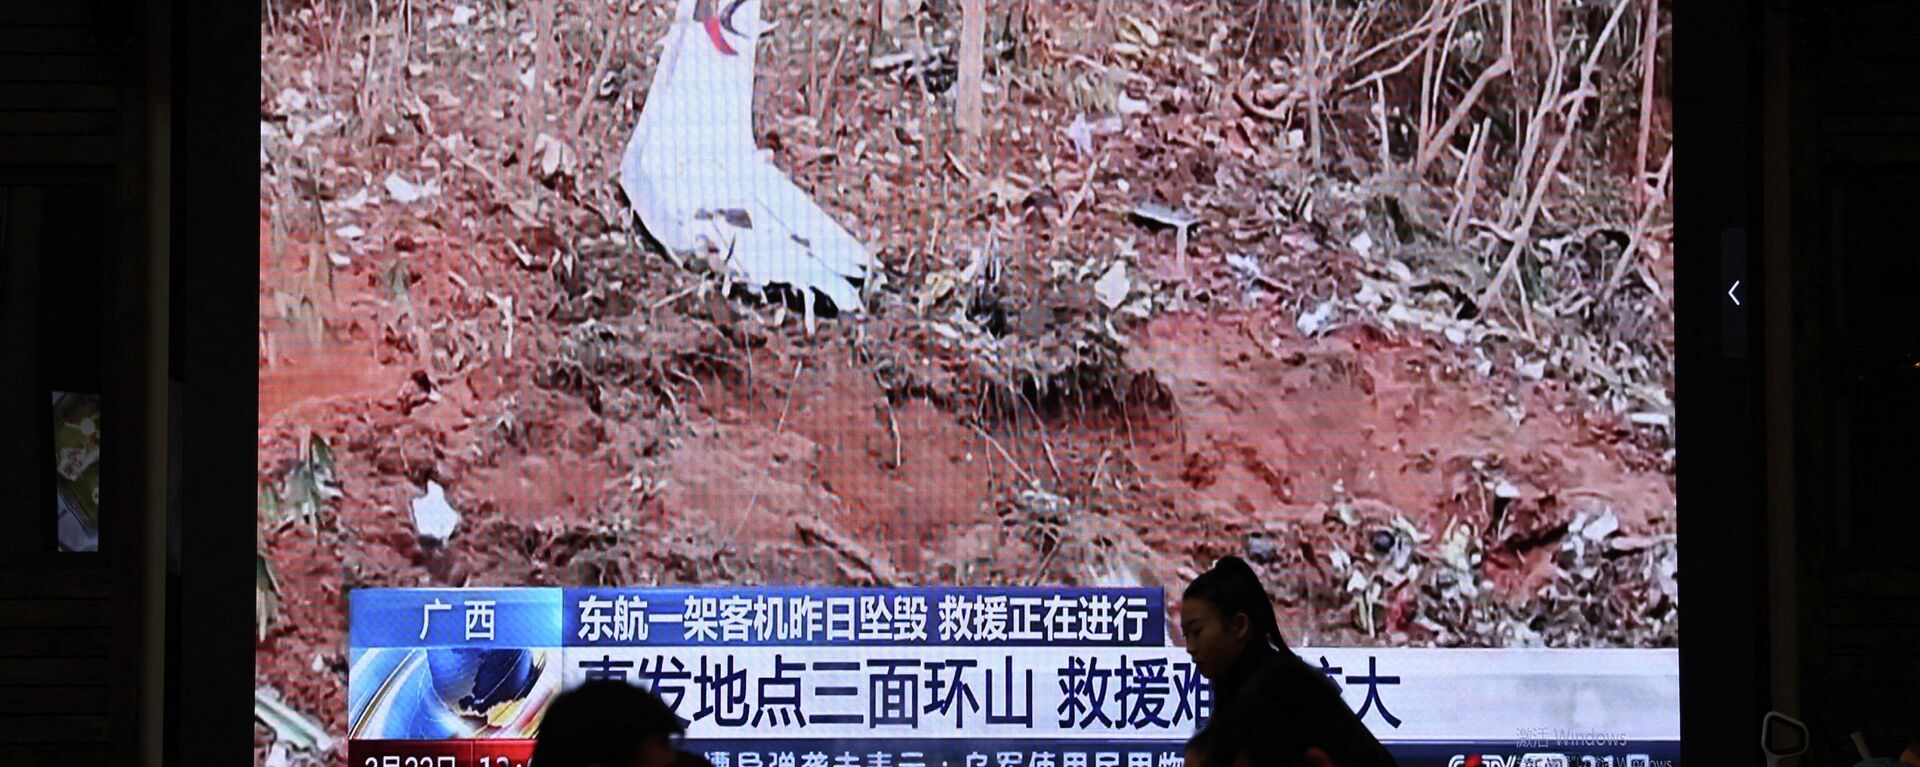 Vista do local com destroços do Boeing que caiu no leste da China, na reportagem na televisão em um dos restaurantes em Pequim, 22 de março de 2022 - Sputnik Brasil, 1920, 22.03.2022